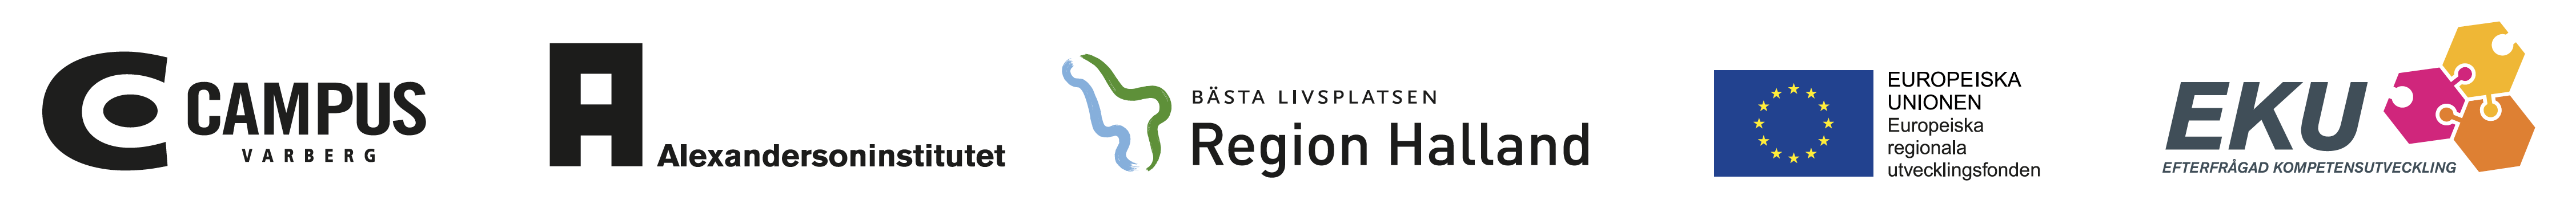 Logotyper för Campus Varberg, Alexandersoninstitutet, Region Halland, Europeiska regionala utvecklingsfonden och Efterfrågad kompetensutveckling.